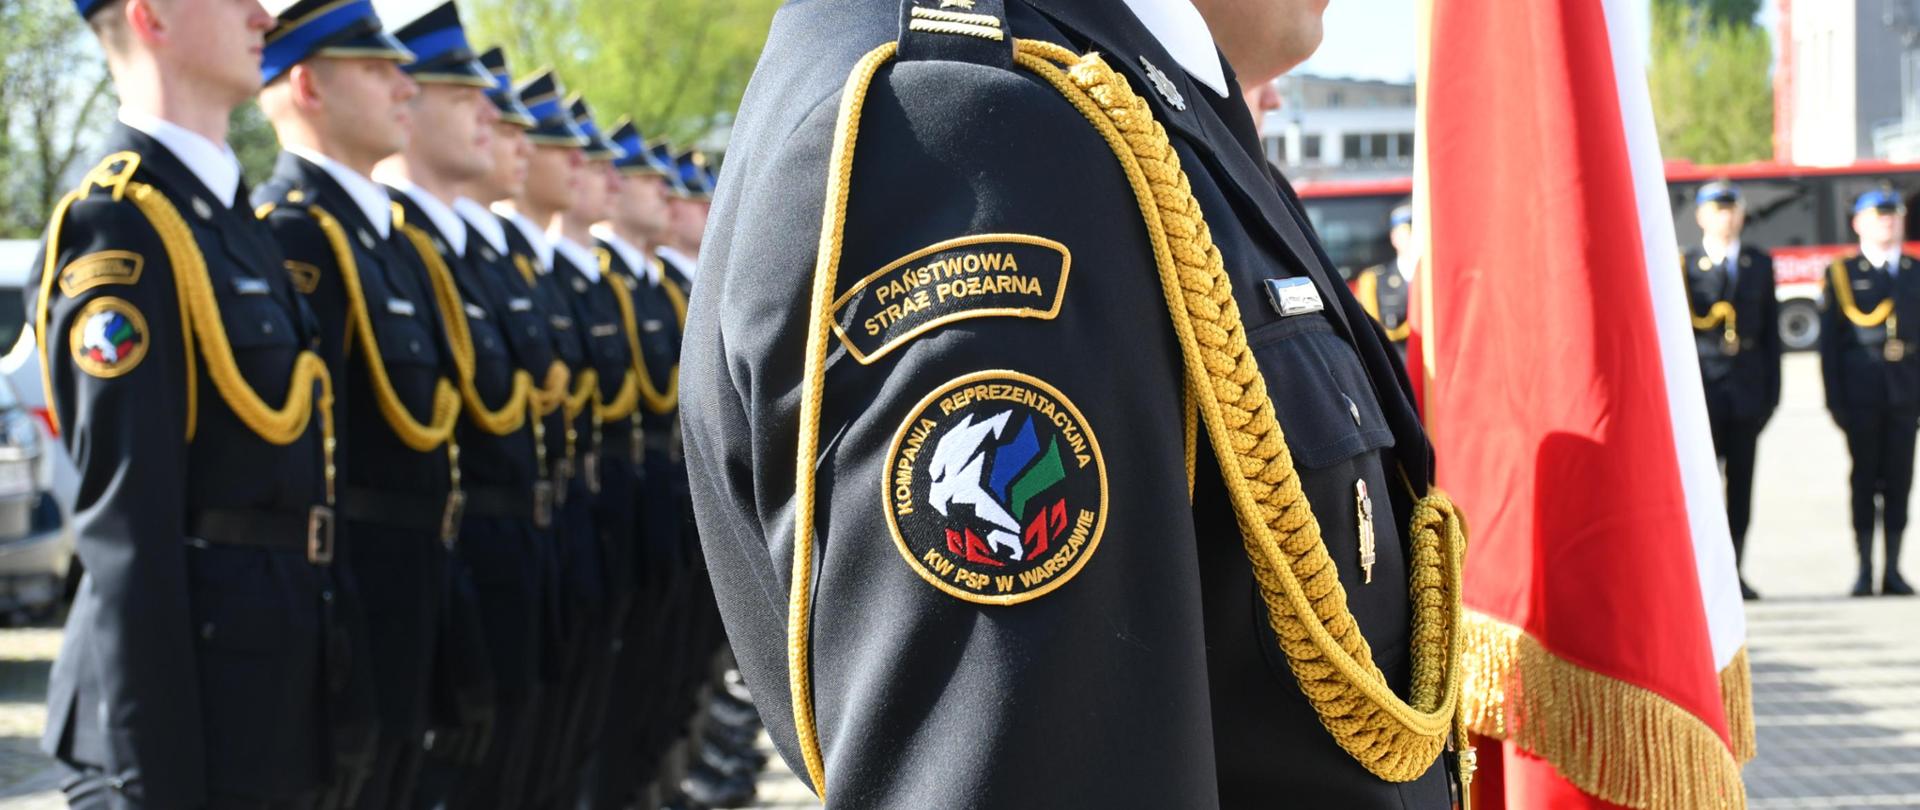 Funkcjonariusze Kompanii Reprezentacyjnej Komendy Wojewódzkiej PSP w Warszawie stoją w dwuszeregu, na pierwszym planie wyostrzenie skierowane na logo Kompanii Reprezentacyjnej znajdujące się na ramieniu jednego ze strażaków